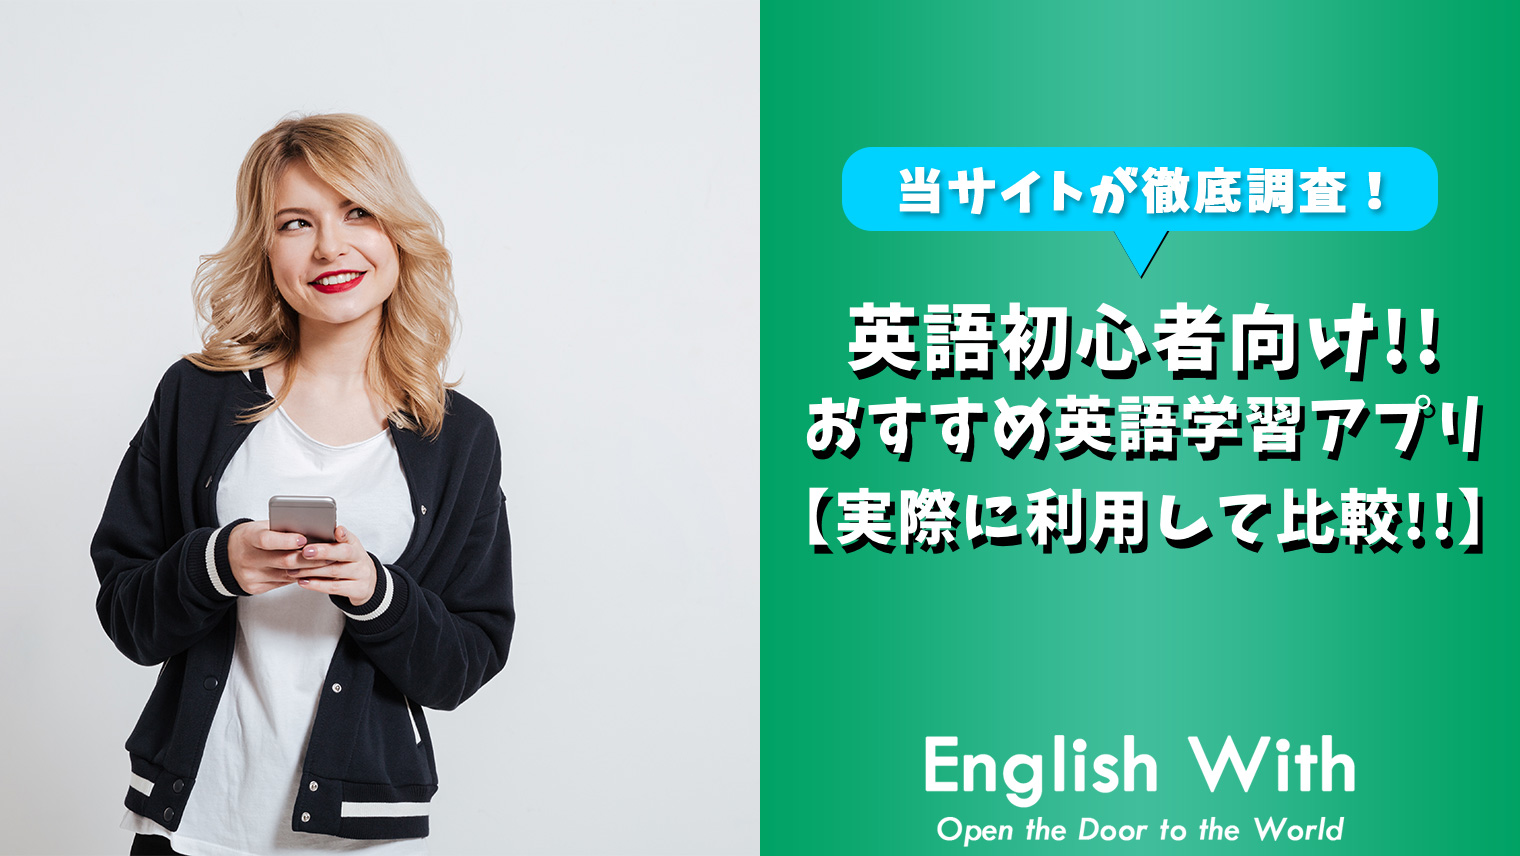 英会話初心者でも始めやすい おすすめ英語学習アプリを紹介 6選 おすすめ英会話 英語学習の比較 ランキング English With